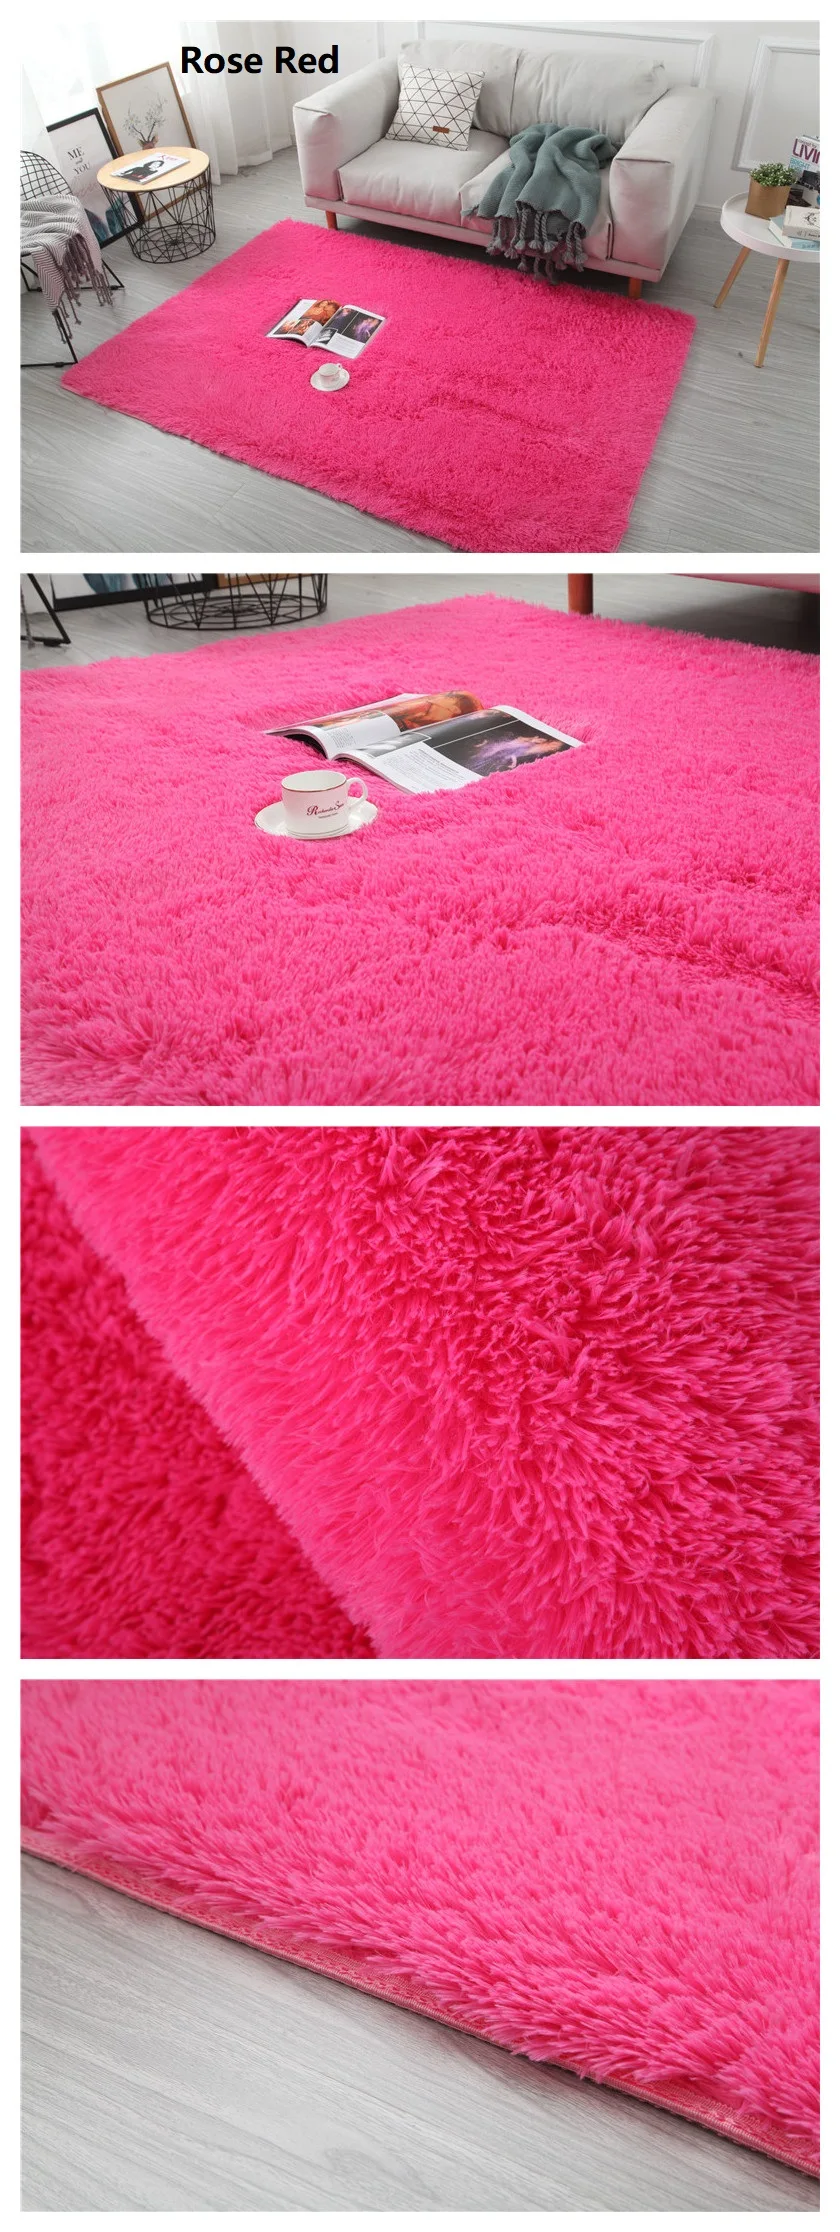 Коврик для гостиной/спальни, противоскользящий мягкий, 150 см * 200 см, ковер, современный коврик, белый, розовый, серый, 11 цветов